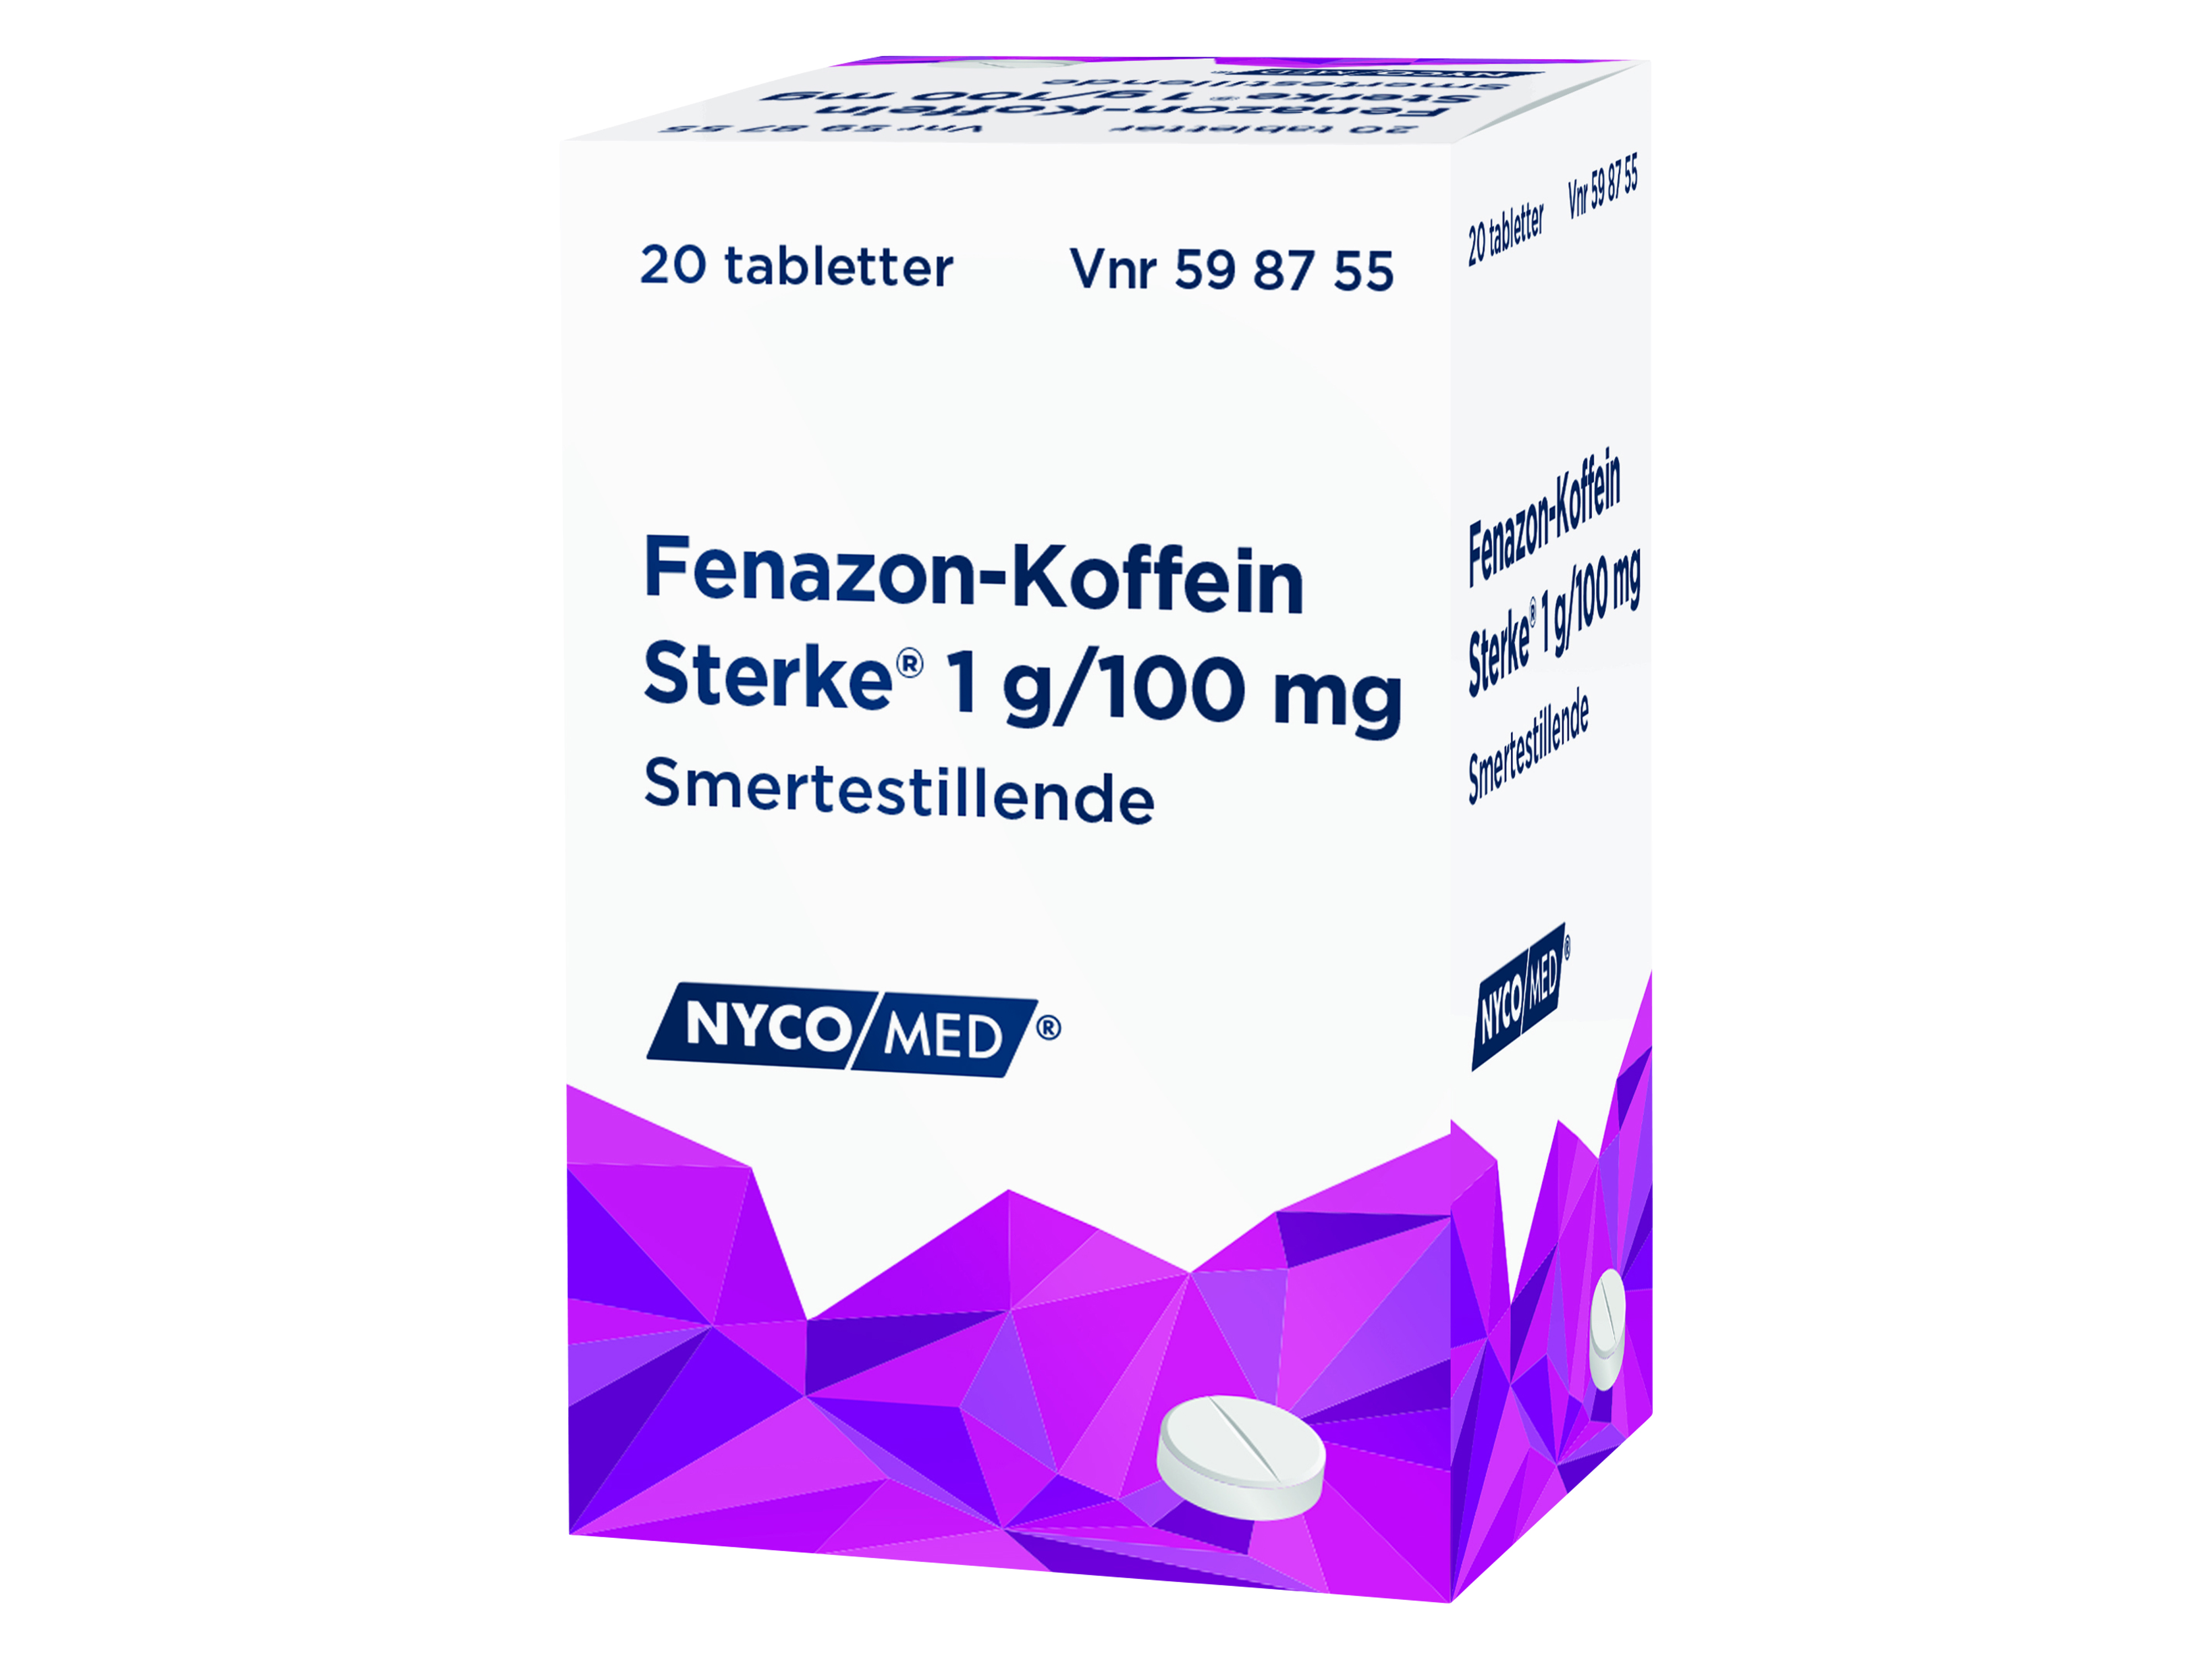 Fenazon-Koffein Sterke tabletter, 20 stk.